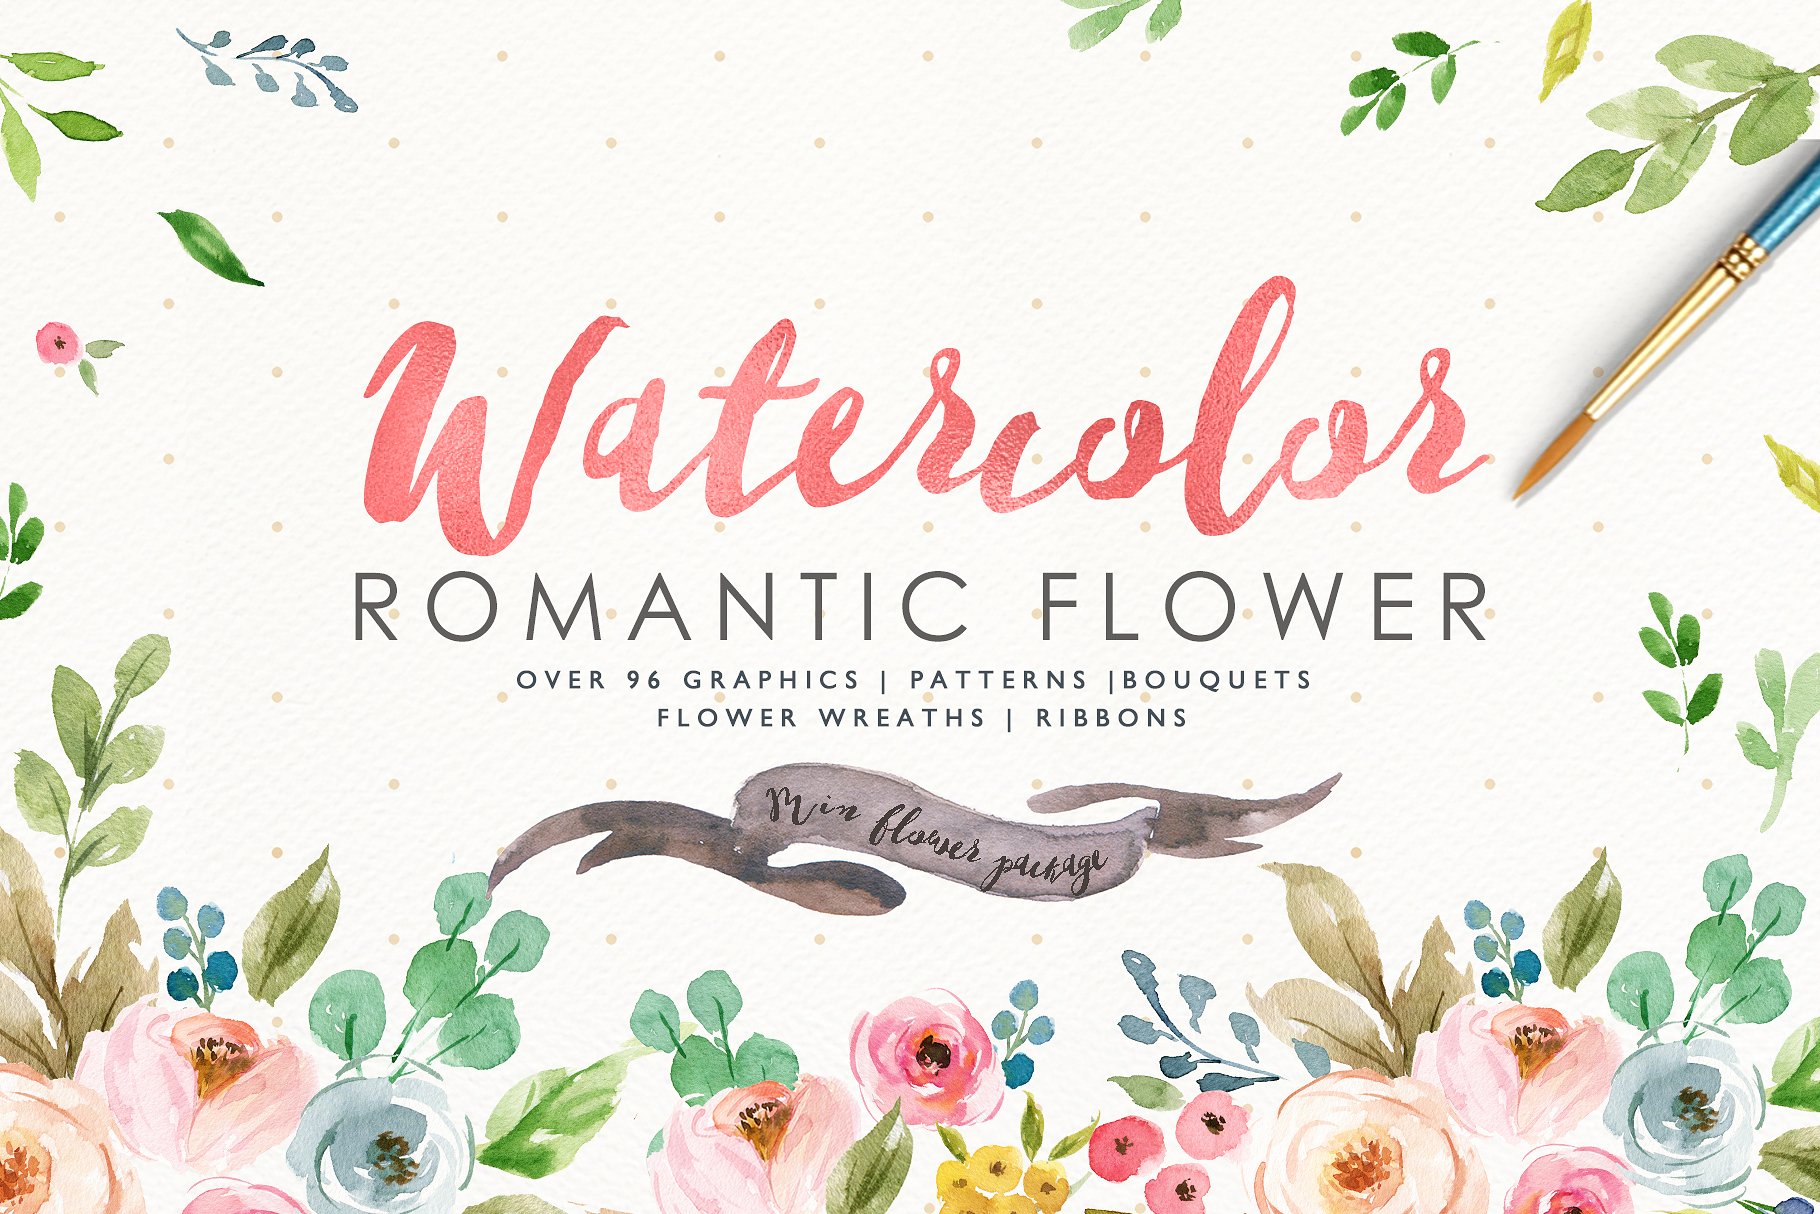 浪漫水彩花卉插画设计套装 Watercolor Romantic Flower插图